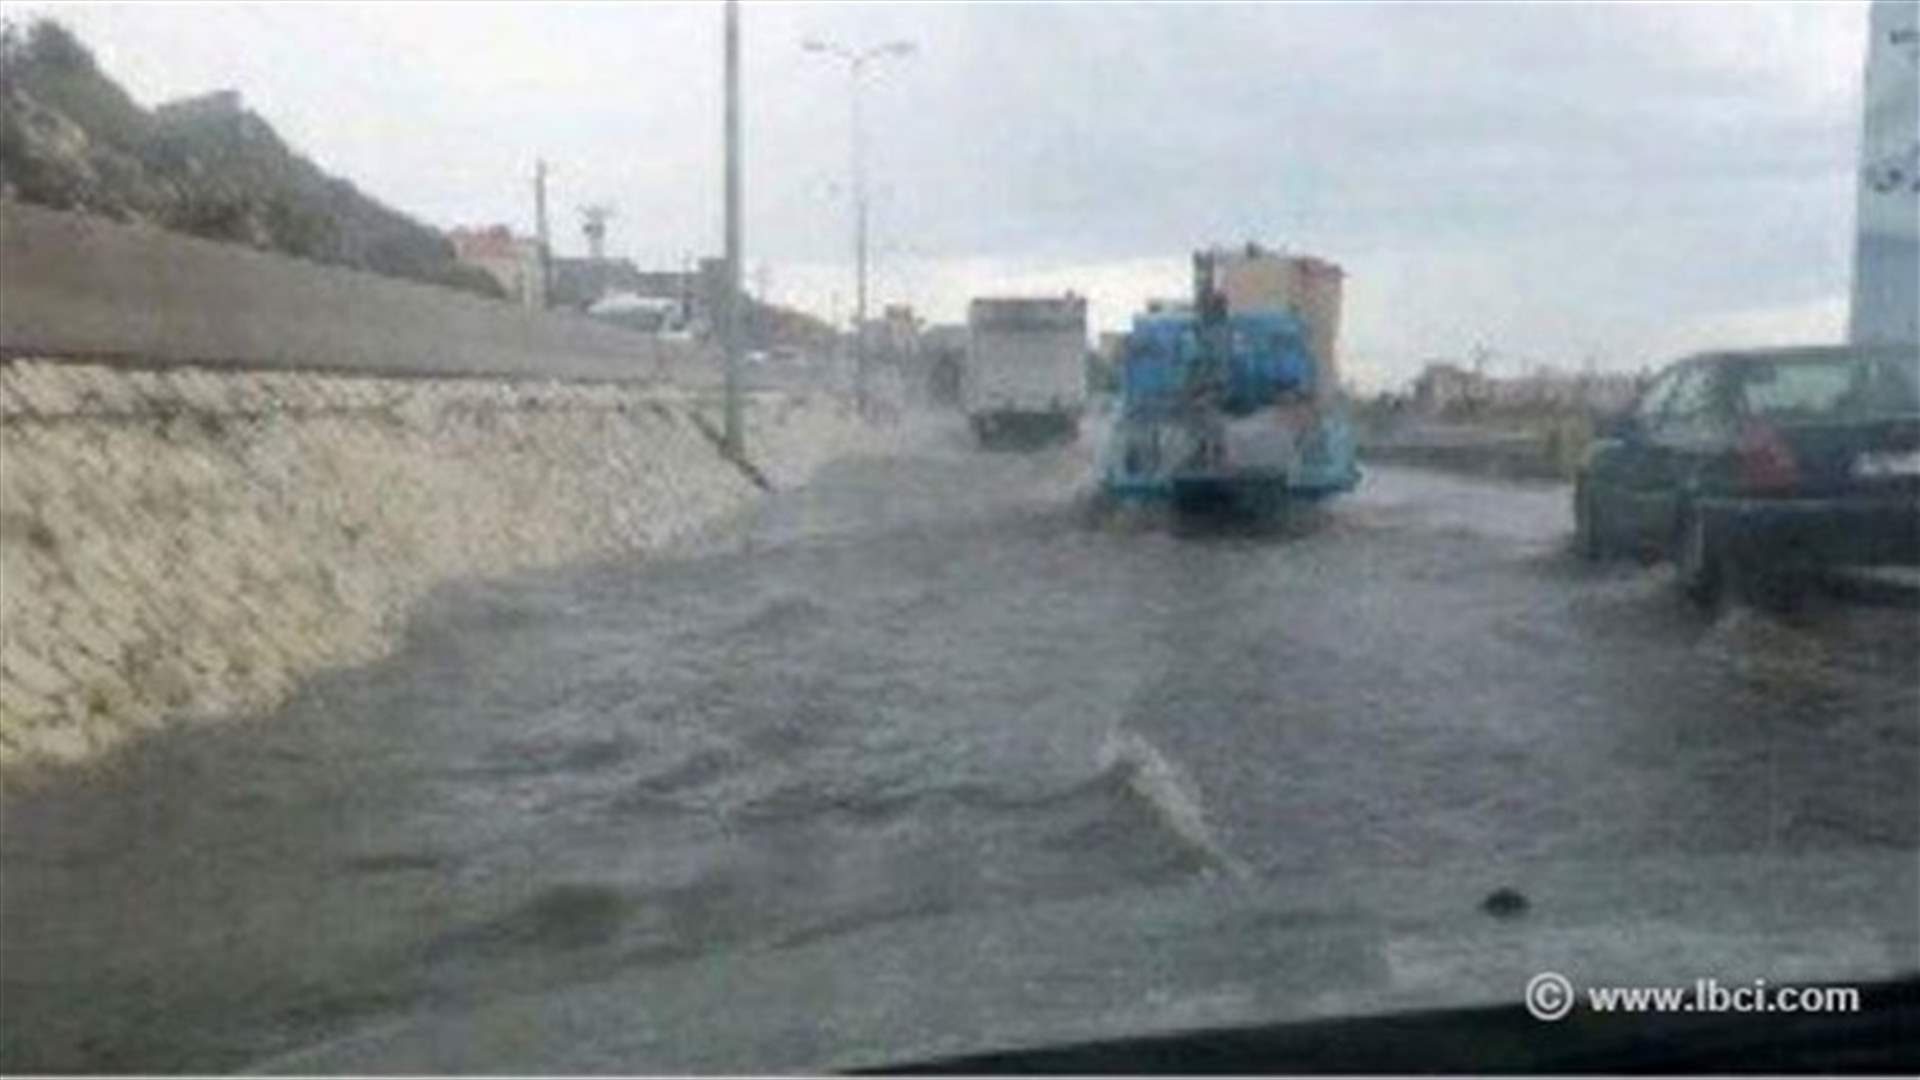 بالصور: مياه الامطار تعيق مرور السيارات على اوتستراد طرابلس البترون 